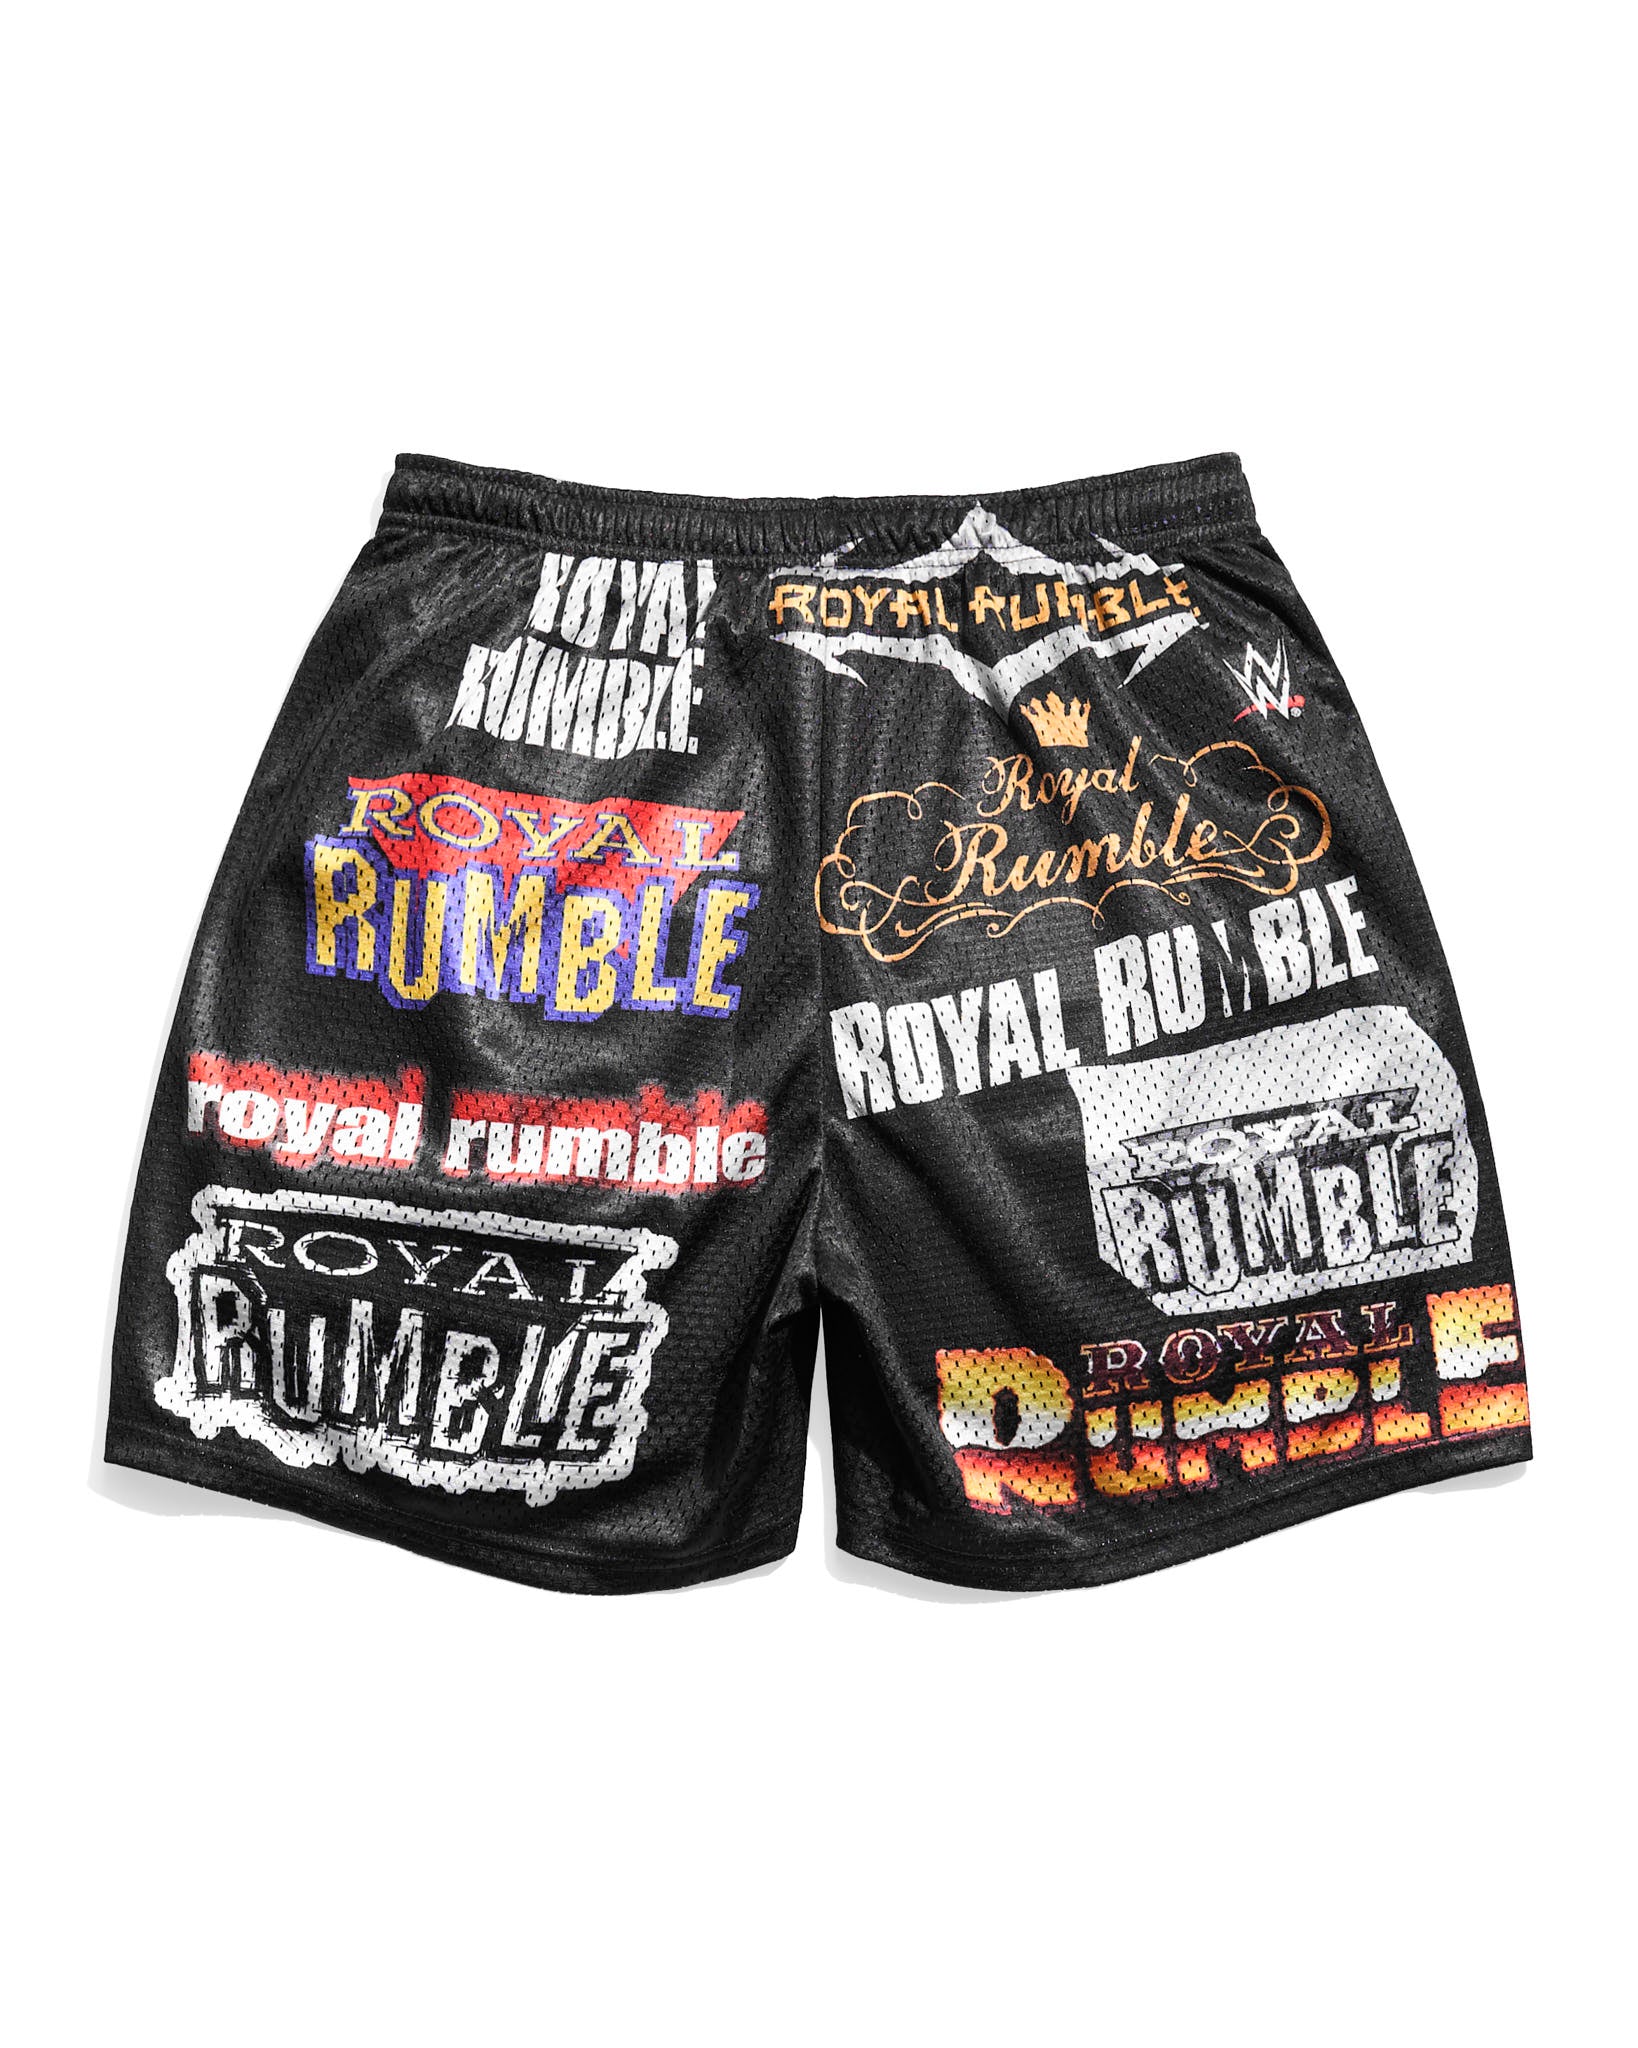 Royal Rumble Historic Logos Retro Shorts